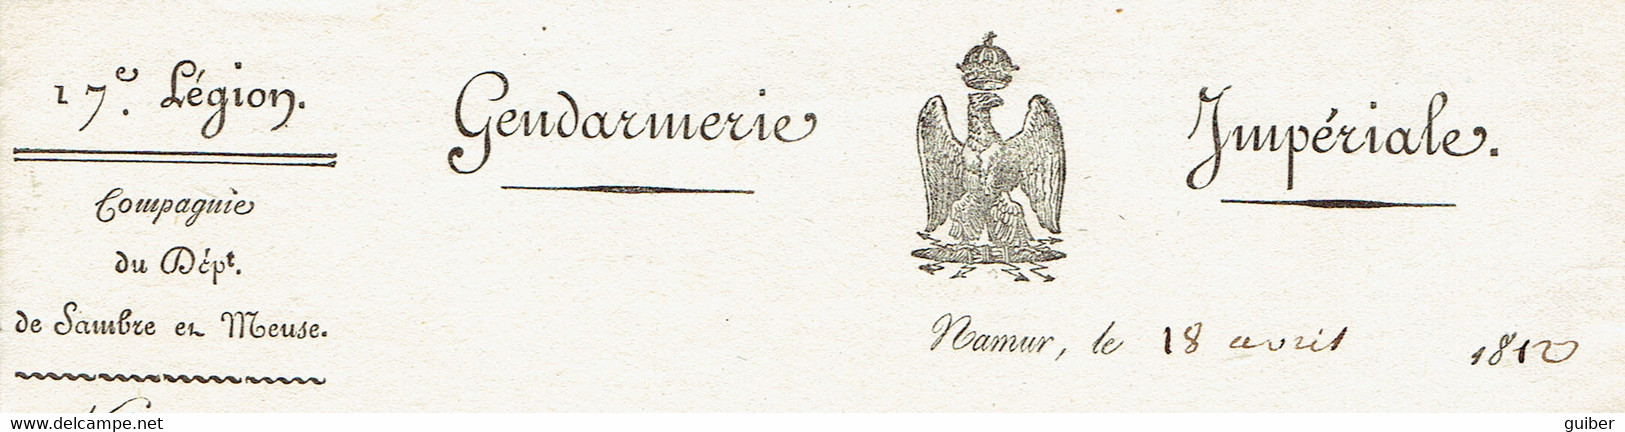 Gendarmerie Impériale 1812 L.manuscrite Capitaine Marotte Sambre Meuse Prefet Légionnaire Empire Namur Maire Havelange - Manuscrits